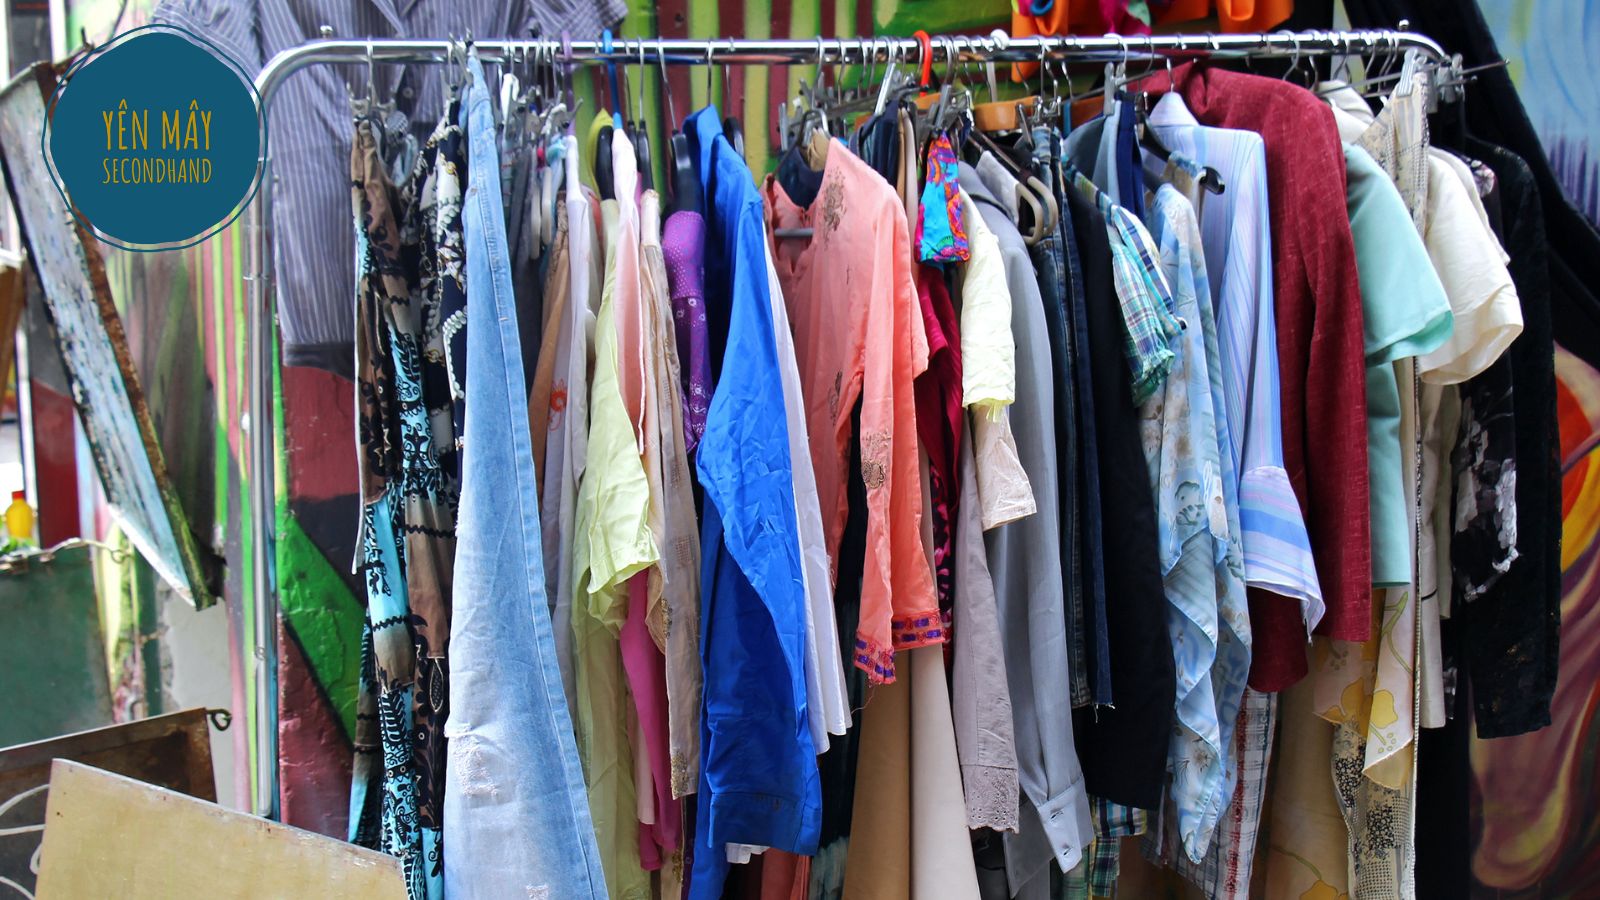 Chợ quần áo second hand Bà Chiểu - Quận Bình Thạnh